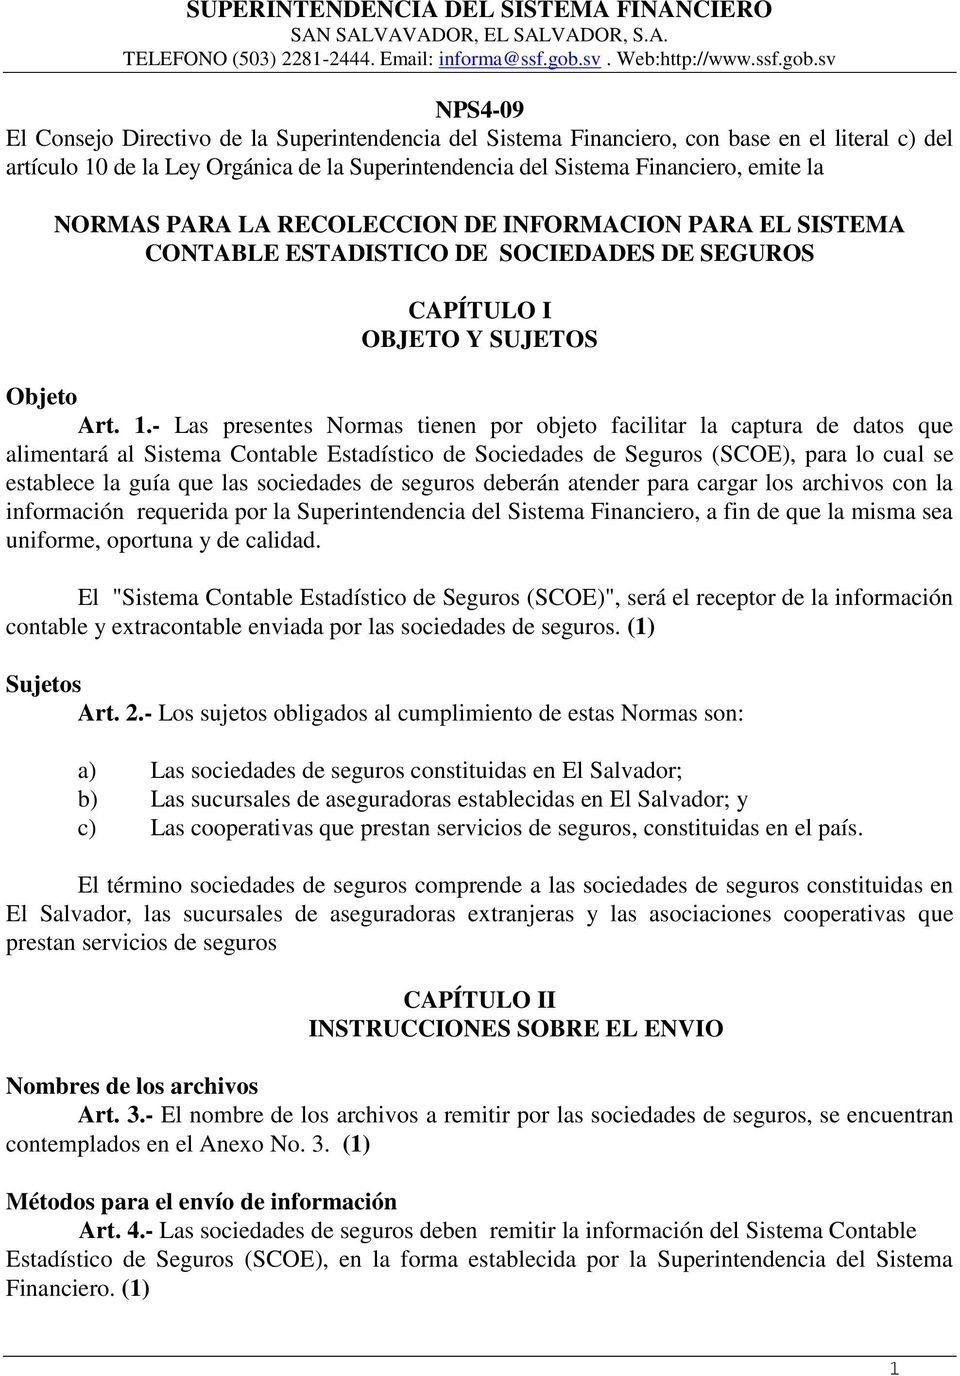 sv NPS4-09 El Consejo Directivo de la Superintendencia del Sistema Financiero, con base en el literal c) del artículo 10 de la Ley Orgánica de la Superintendencia del Sistema Financiero, emite la